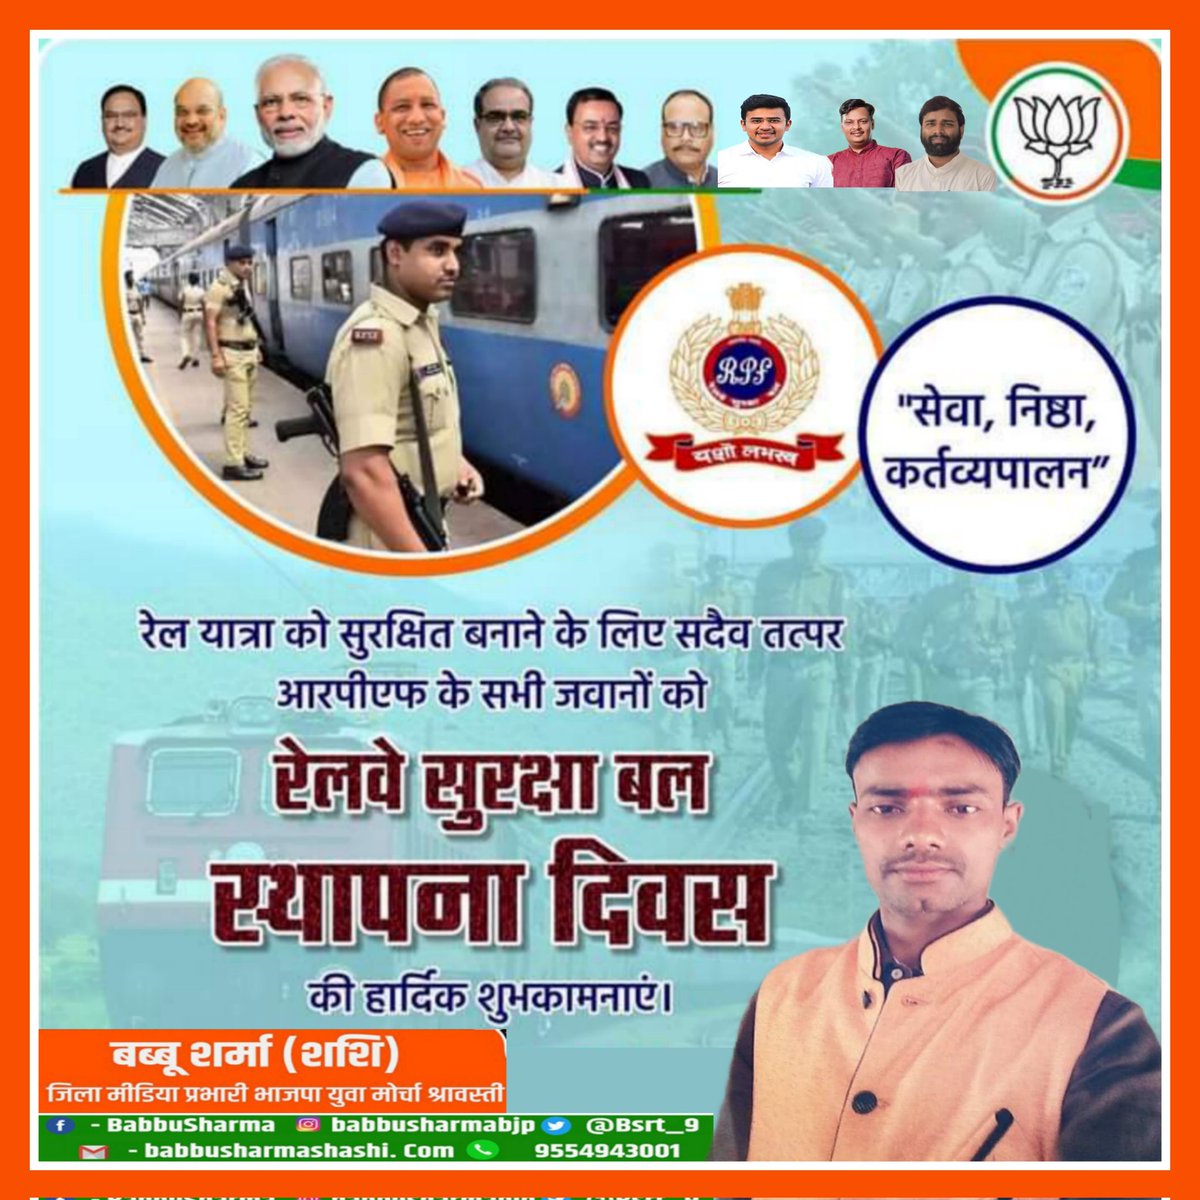 'सेवा, निष्ठा, कर्तव्यपालन'

रेल यात्रा को सुरक्षित बनाने के लिए सदैव तत्पर आरपीएफ के सभी जवानों को रेलवे सुरक्षा बल के स्थापना दिवस की हार्दिक शुभकामनाएं।
#RPFFoundationDay 

@BJP4India @BJP4UP @BJYM @Bhupendraupbjp @brajeshpathakup @imittalnitin @Bjp4Awadh